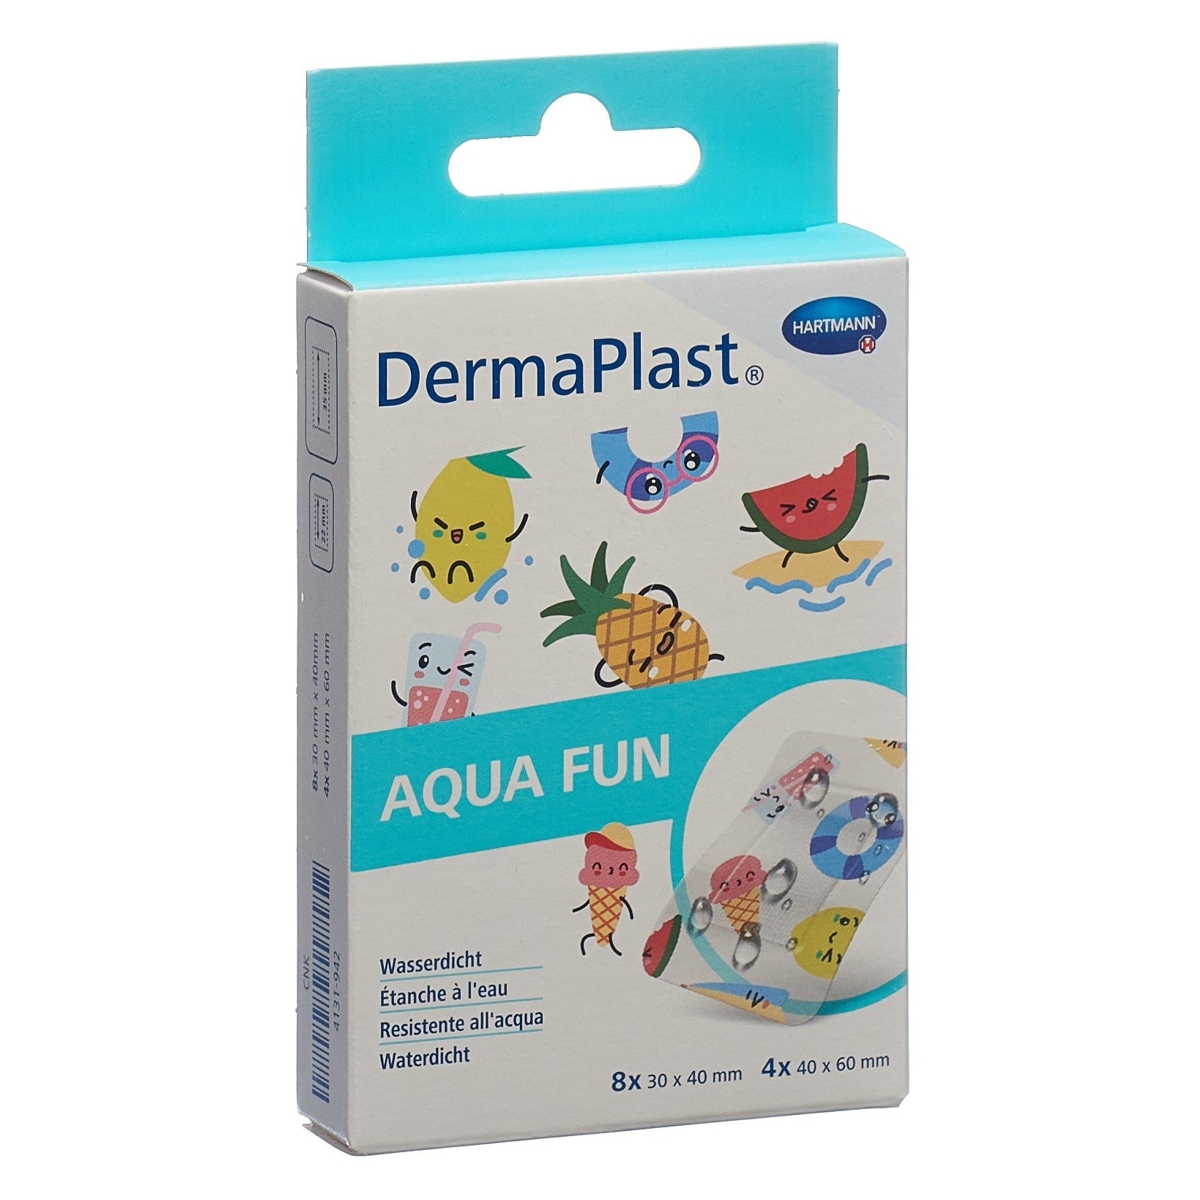 Dermaplast Aqua Fun Pflaster im lustigen Design - Wasserdicht